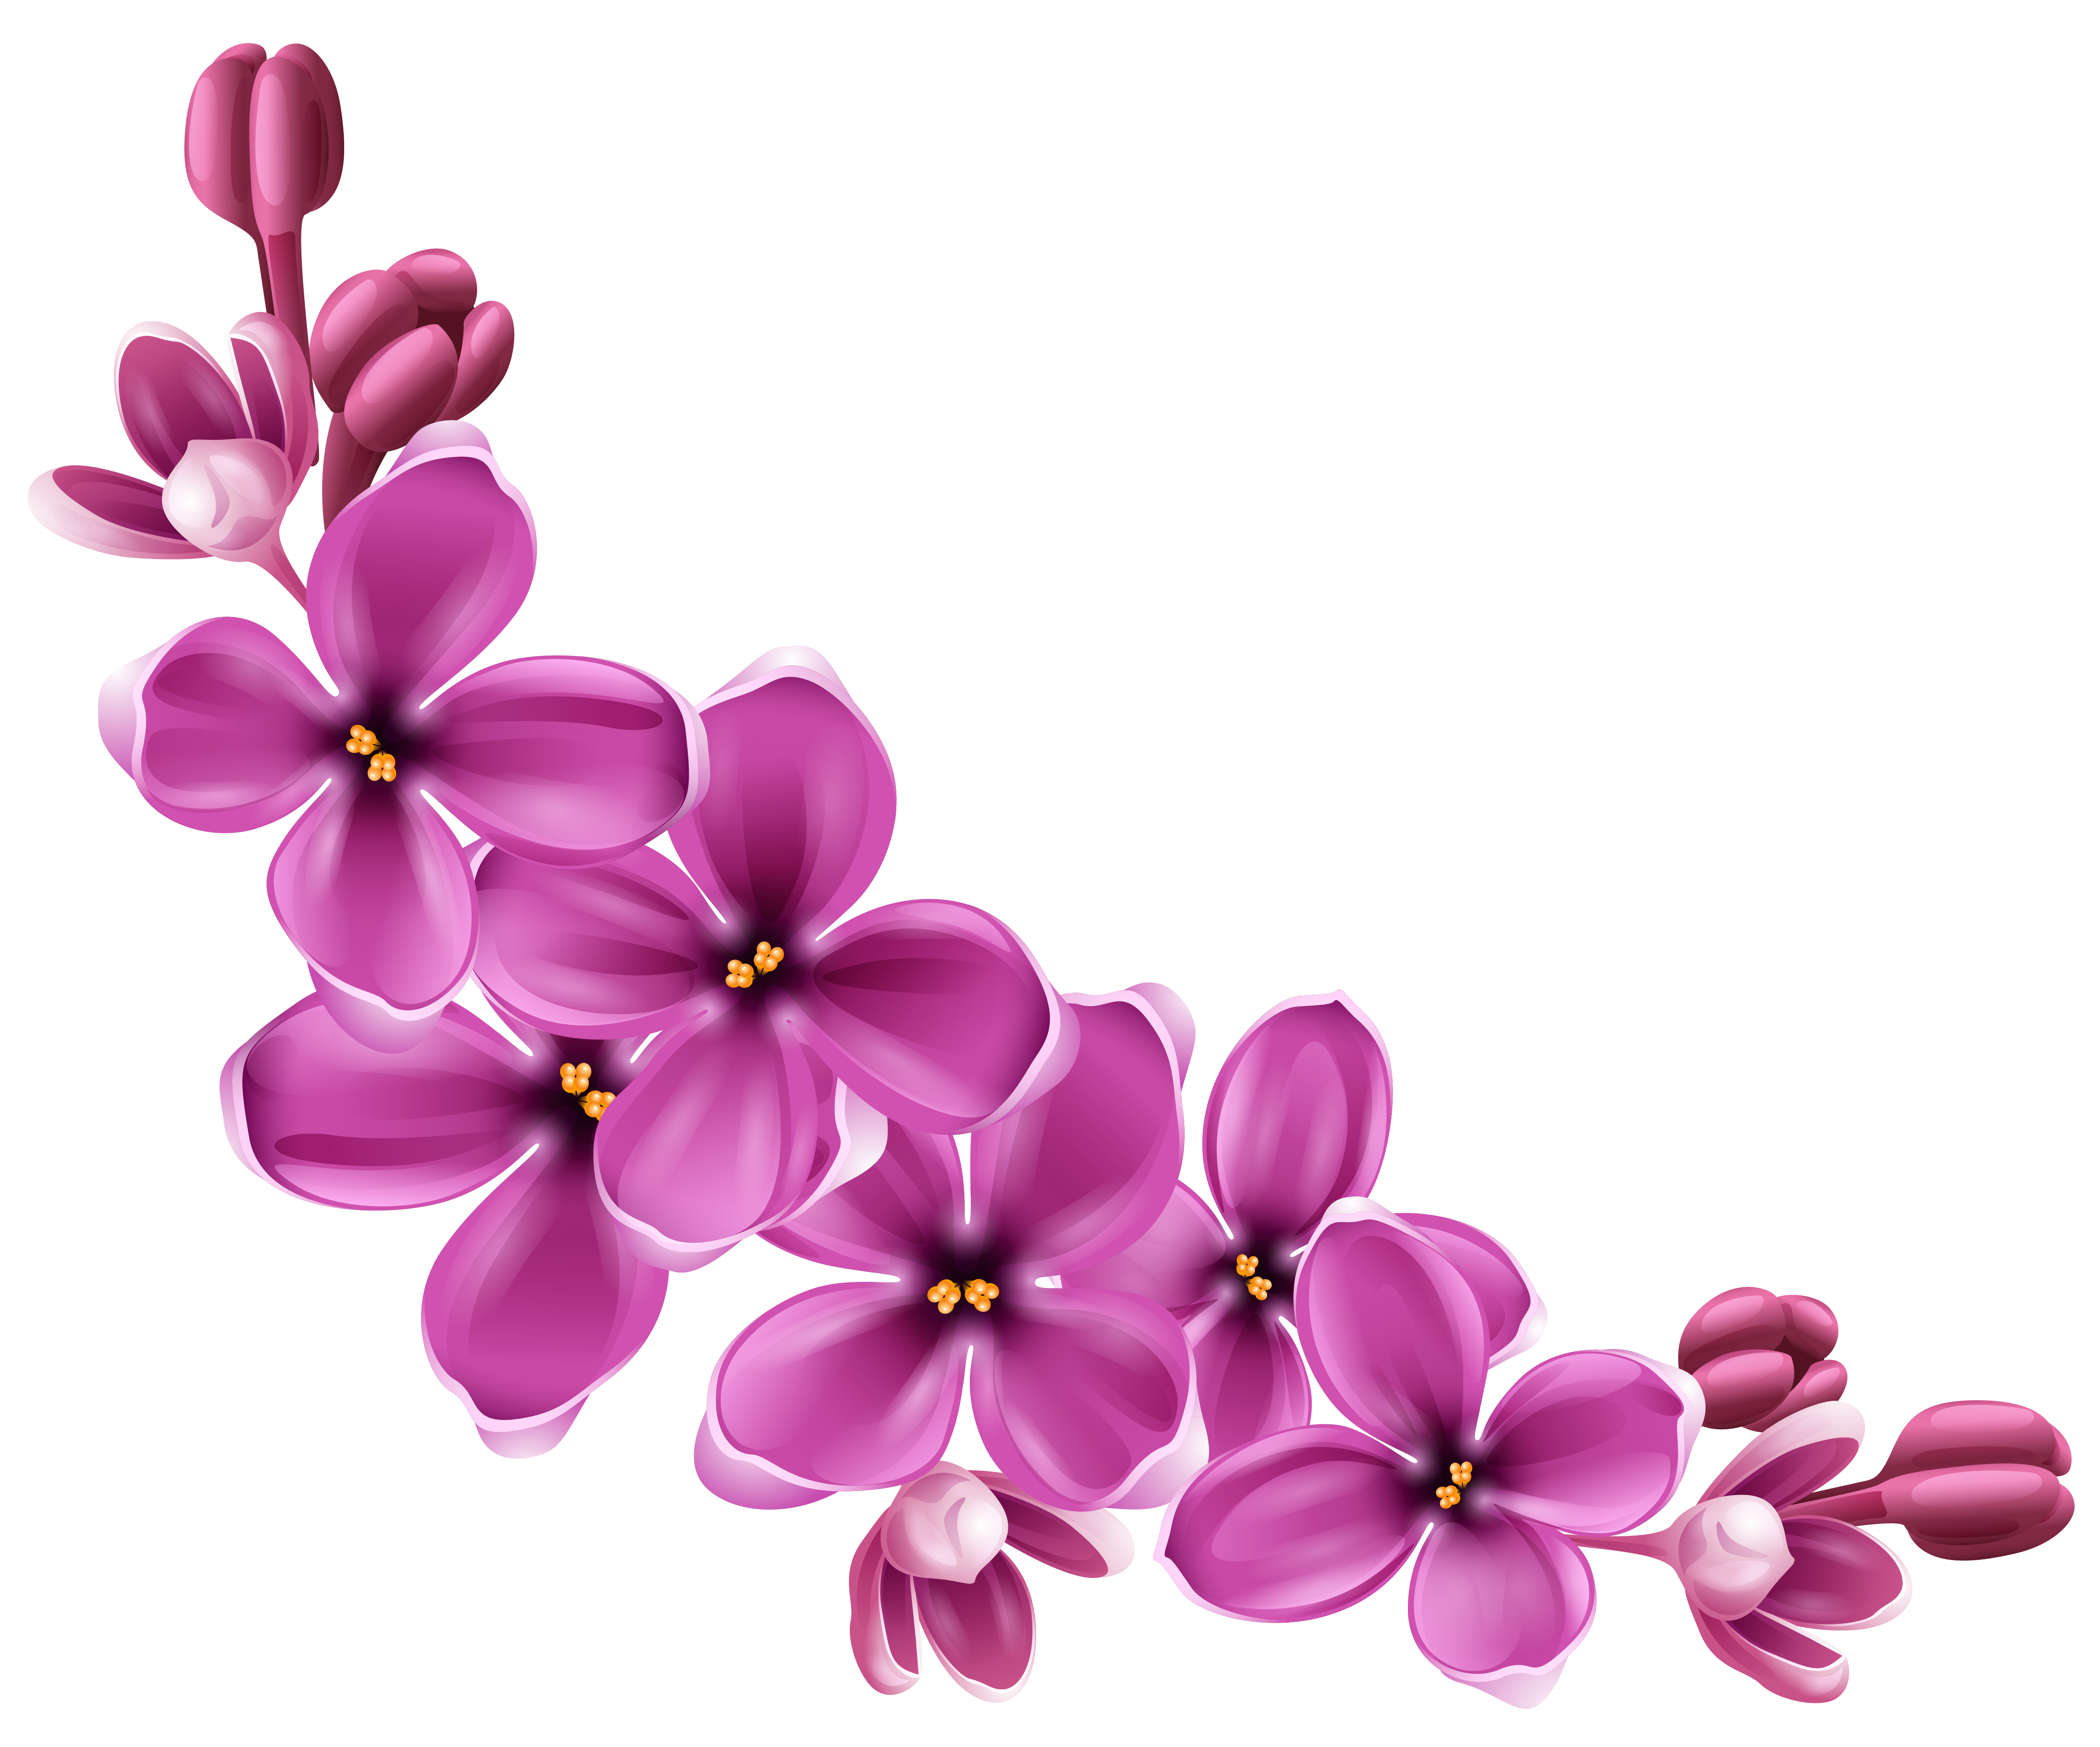 Spring Blossom Flower PNG Transparent Image